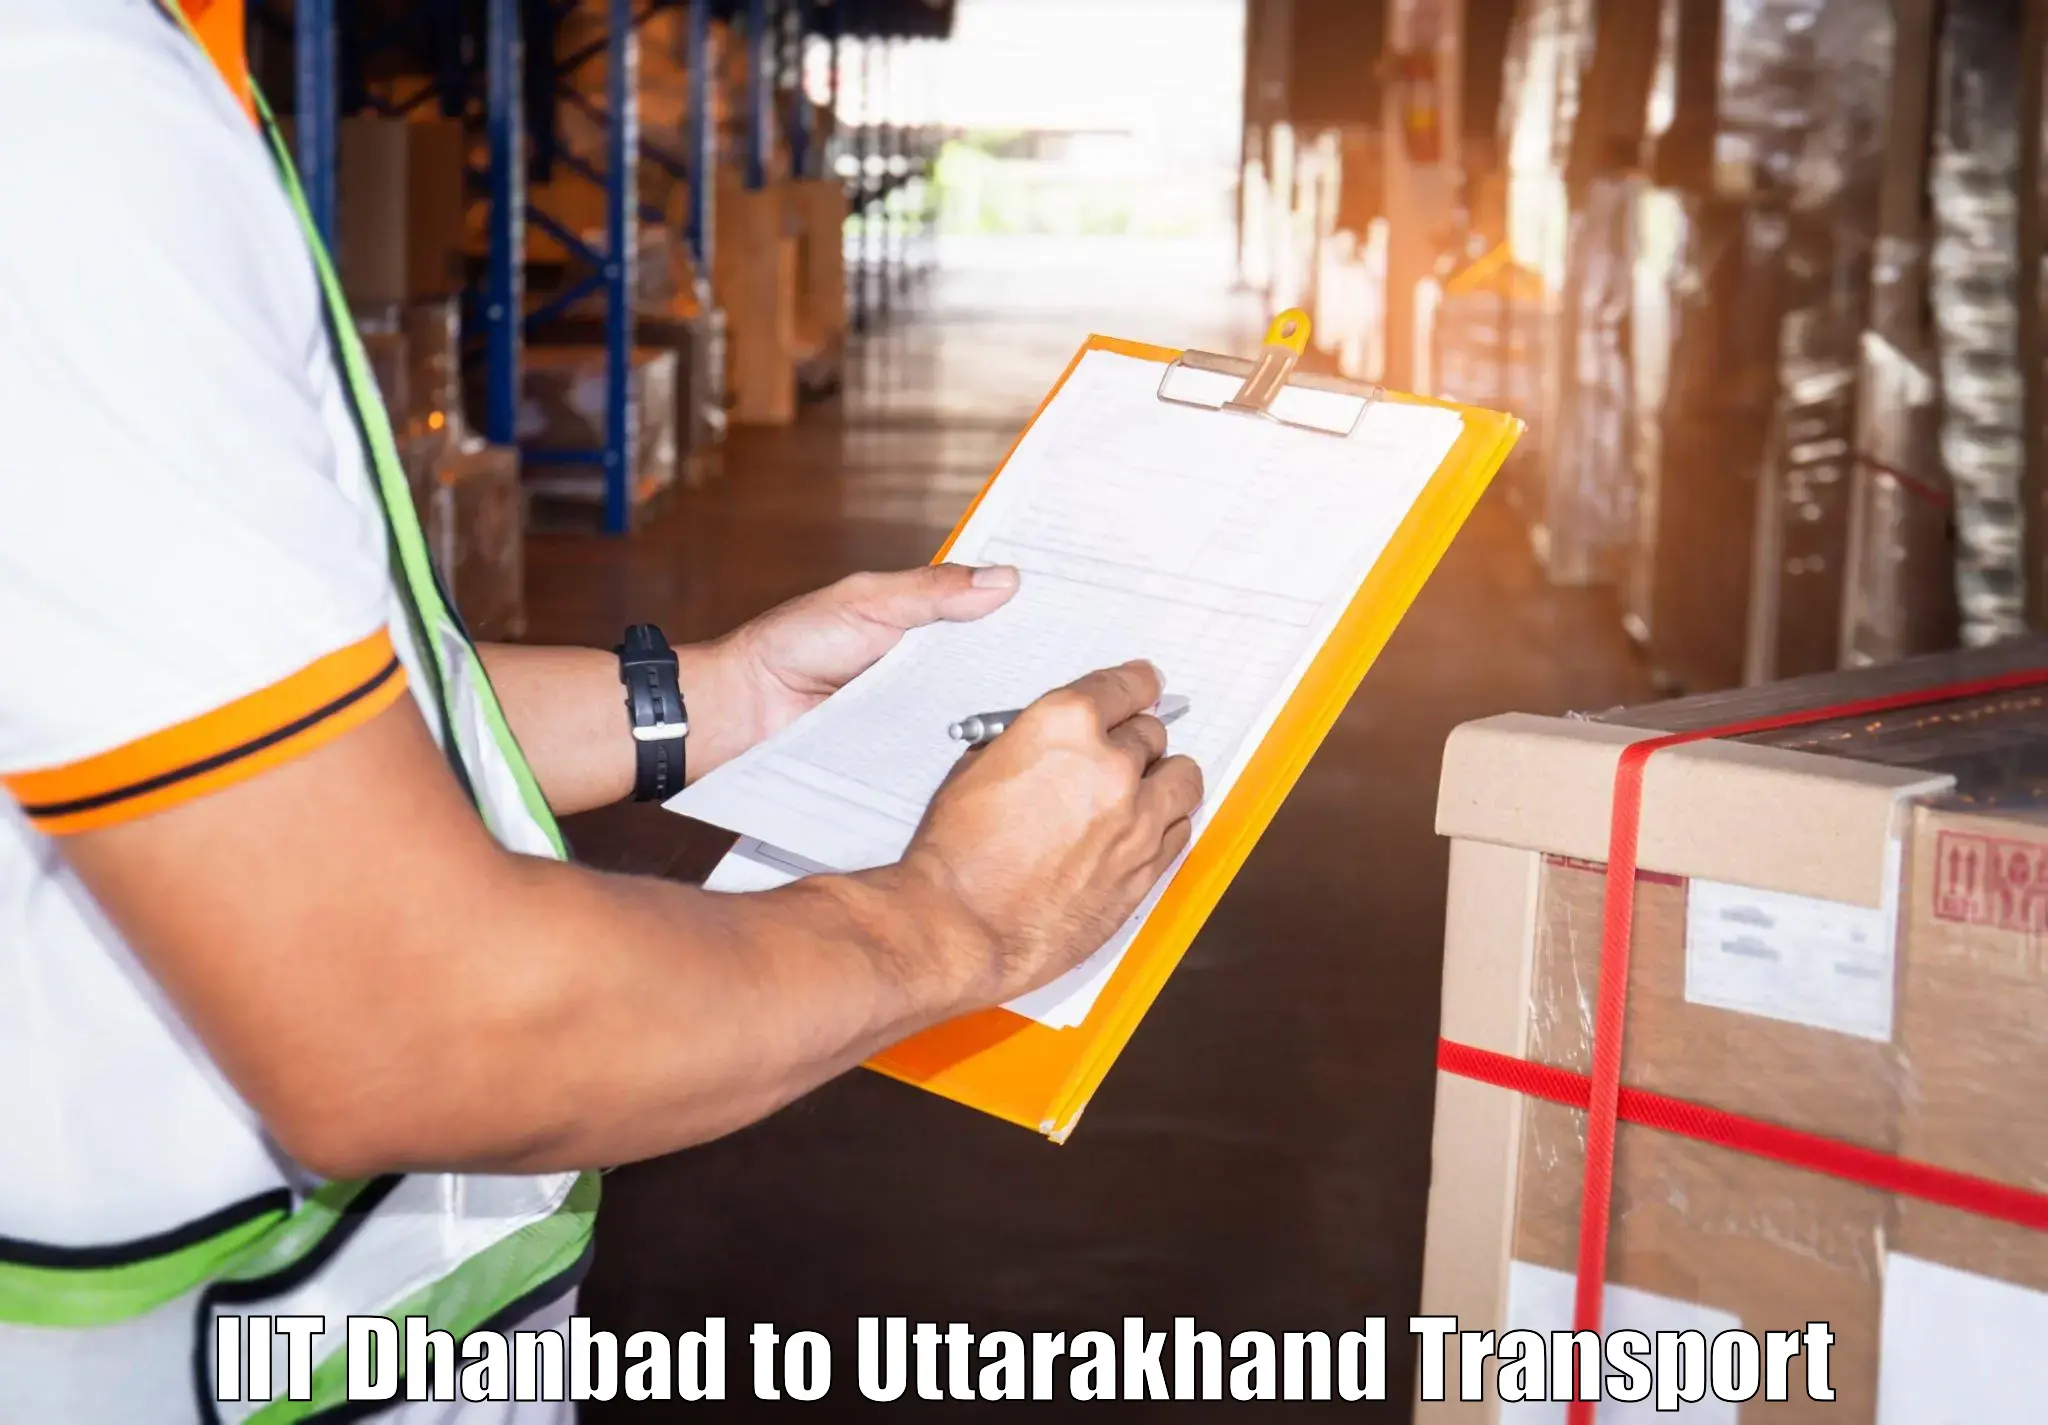 Intercity transport IIT Dhanbad to Kotdwara